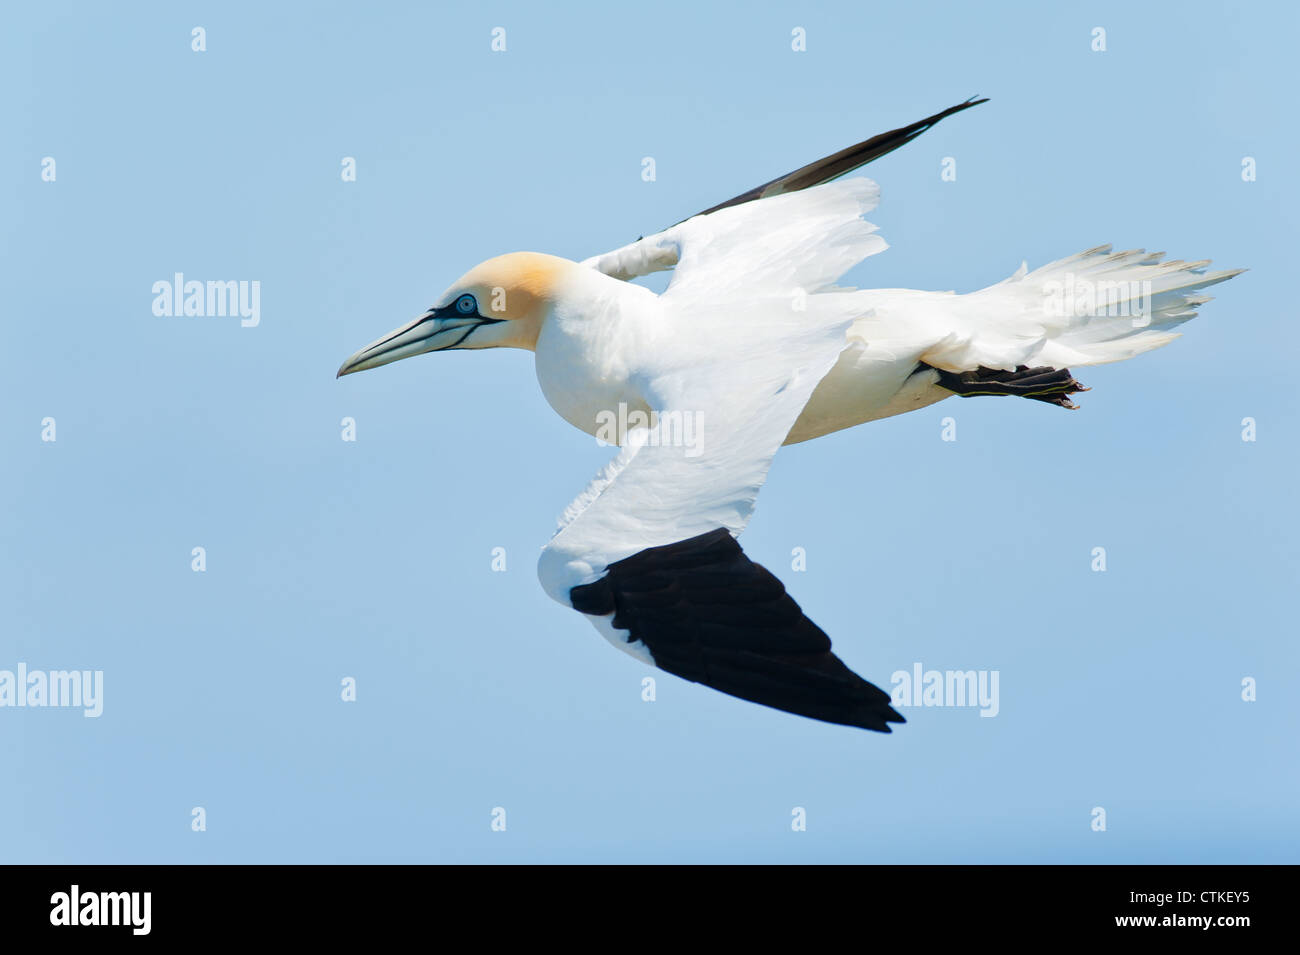 Un northern gannet Morus bassanus Sula bassana graziosamente battenti soaring in volo sopra l'oceano con nebuloso cielo blu dietro. Foto Stock